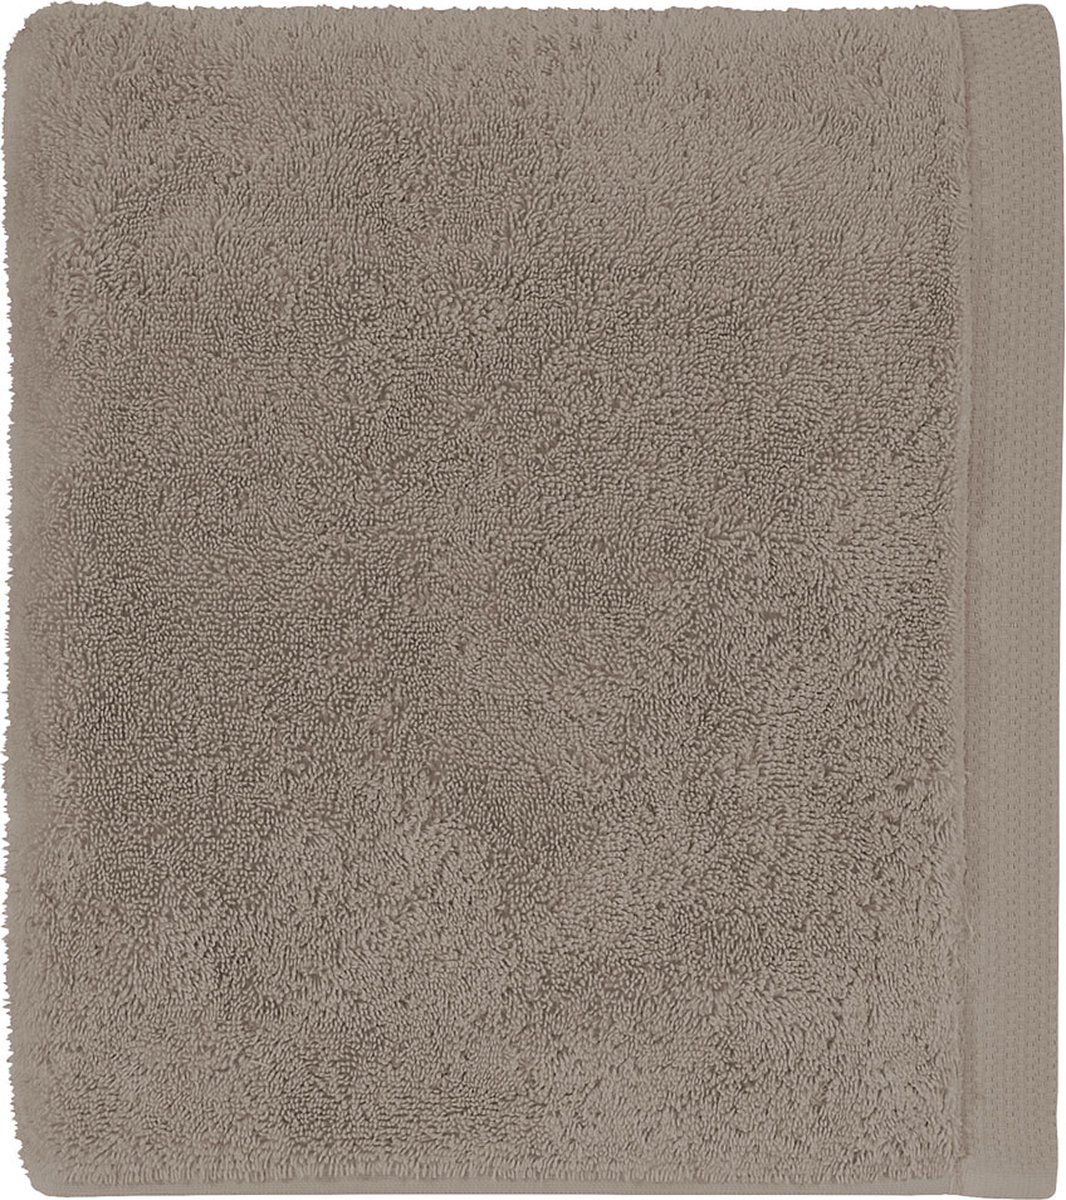 Alexandre Turpault - Essentiel - Effen badhanddoek van biologisch gekamd katoen 60 x 100 cm